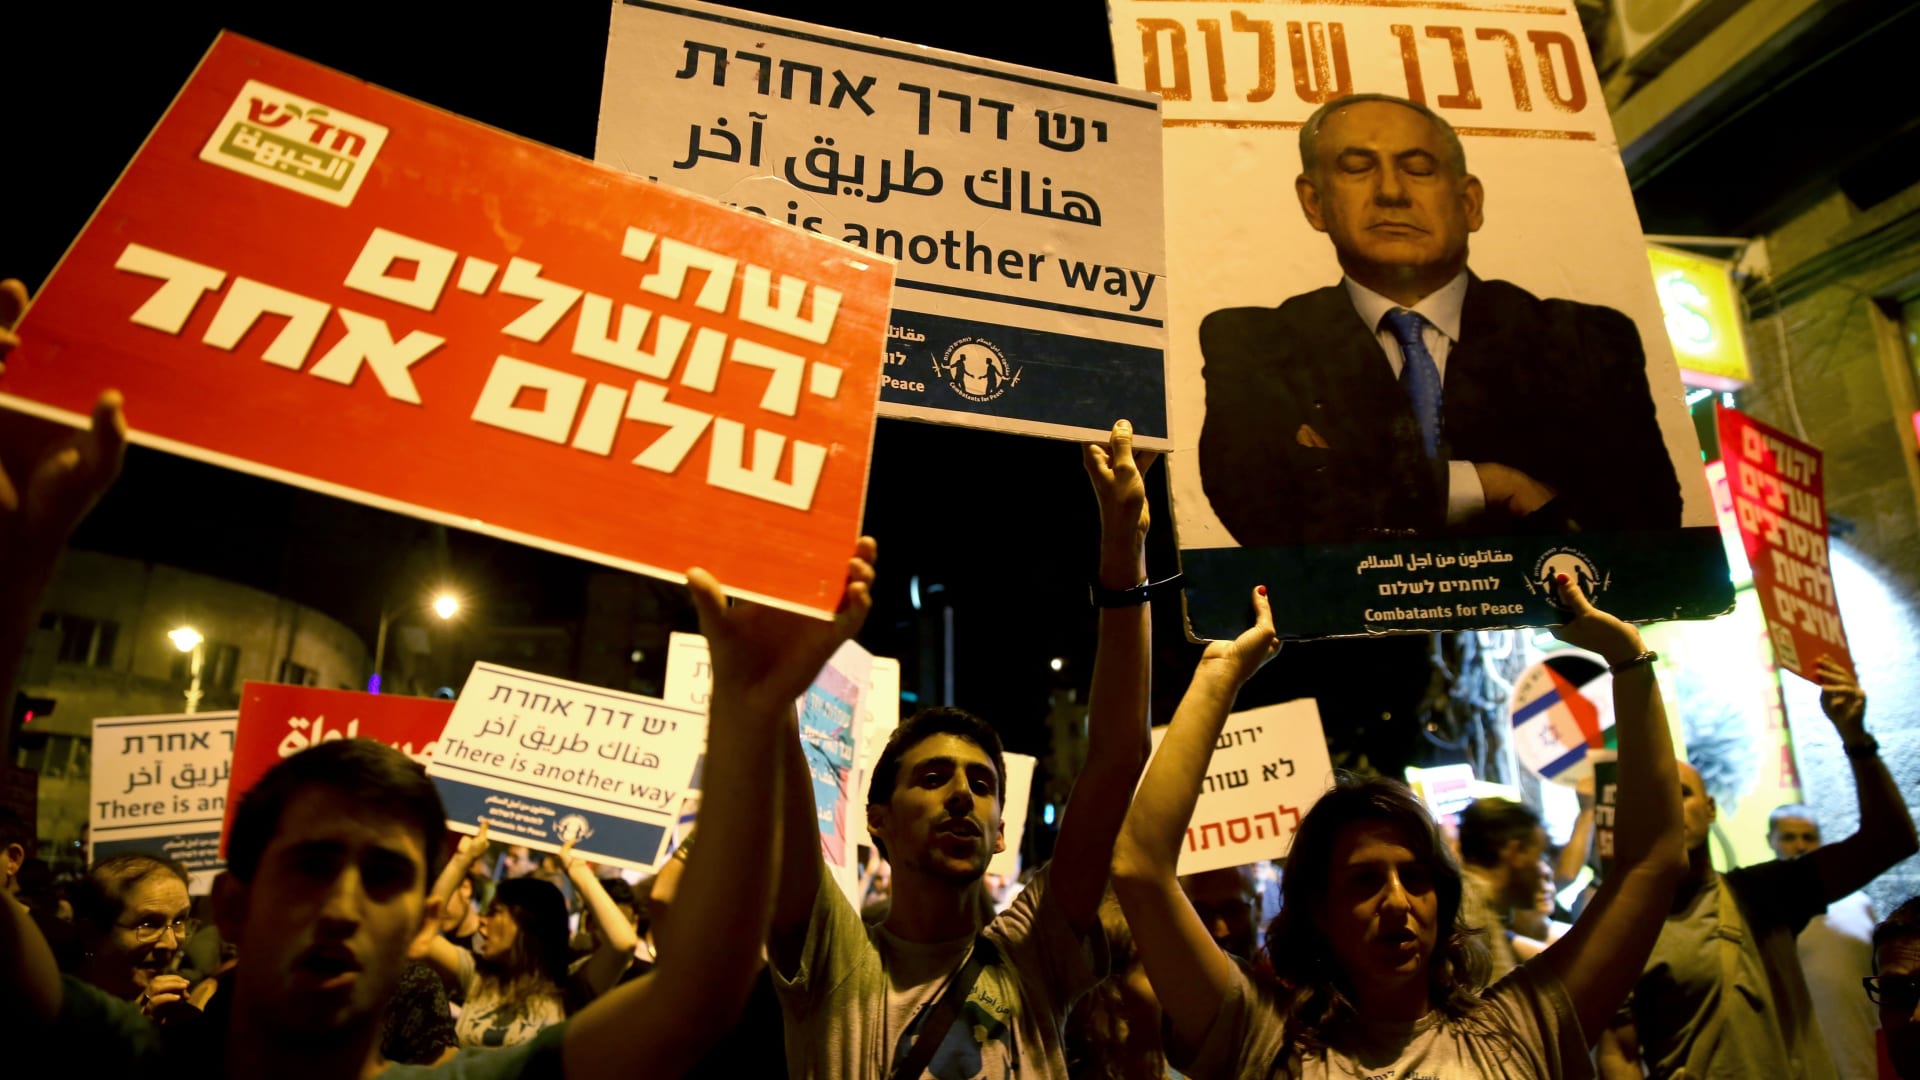 بالصور.. إسرائيليون وفلسطينيون في مسيرة من أجل السلام بالقدس "معاً ضد العنصرية"